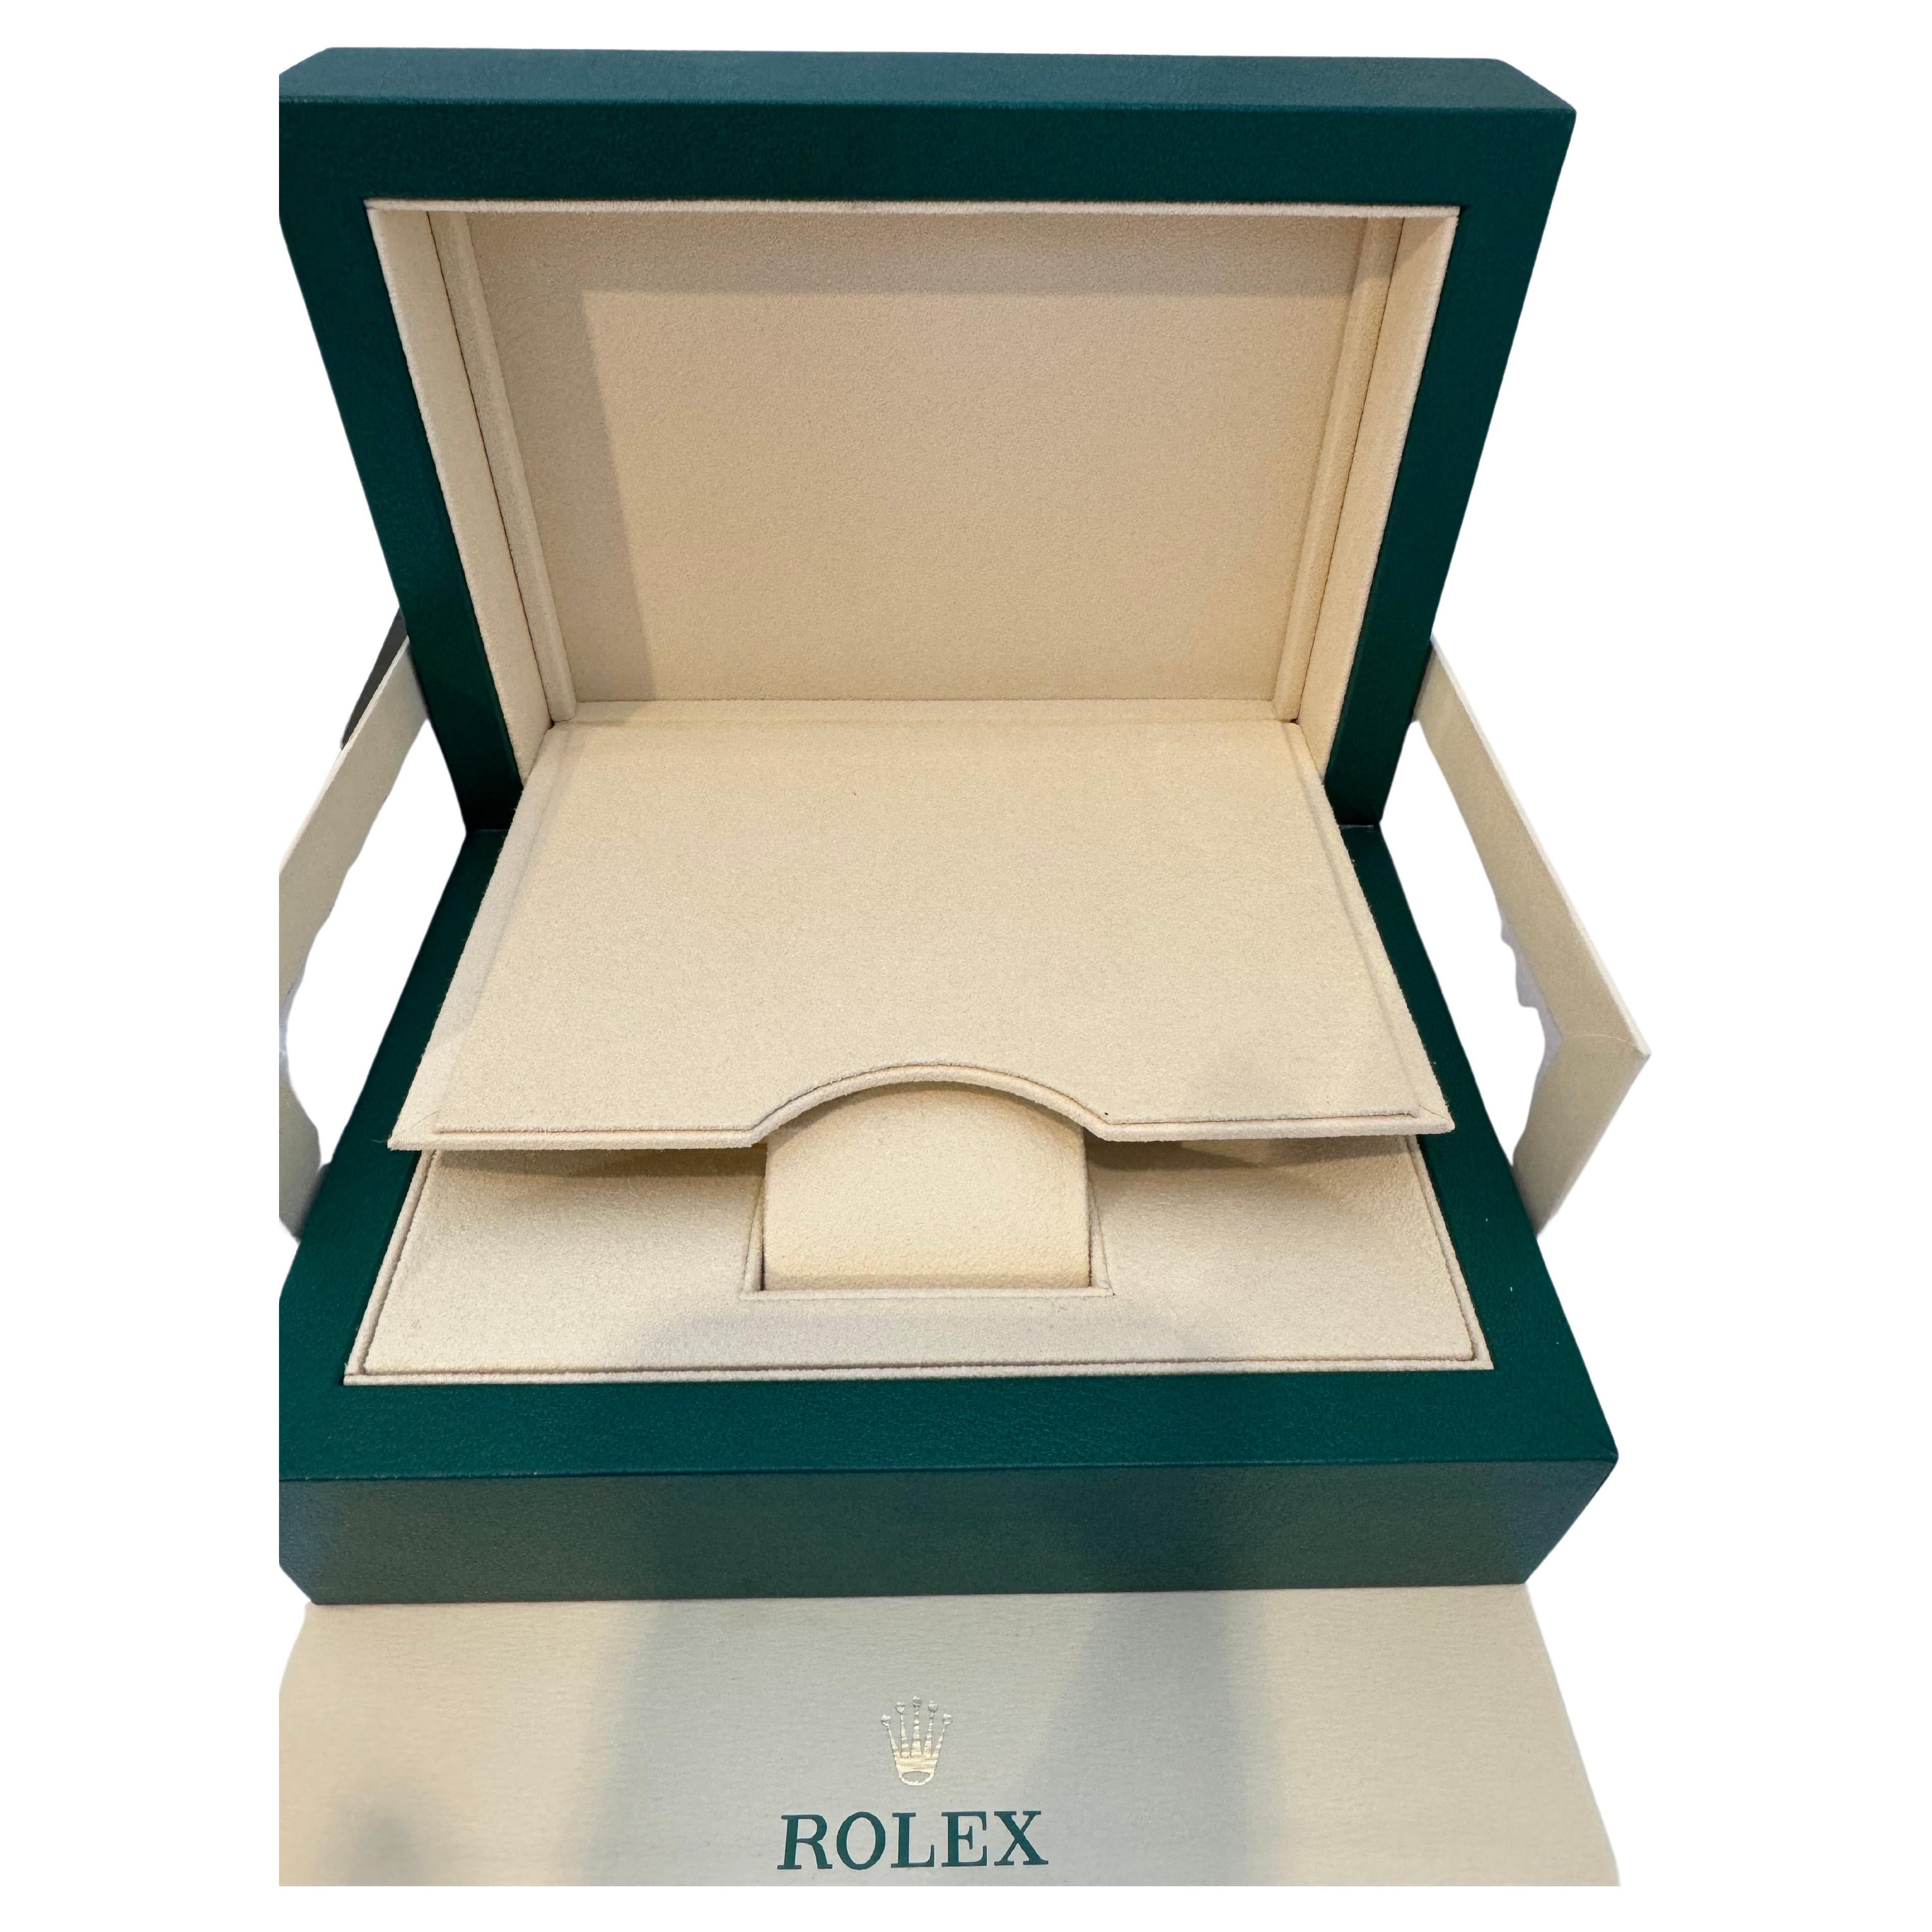 Brand New Watch BOX 
 Rolex war  gekauft im Ausstellungsraum in Manhattan 
 Uhr wurde für den persönlichen Gebrauch verwendet und ich verkaufe die Box

Große Brand New Rolex Box
Vollständige und neue Rolex-Box.
Ref